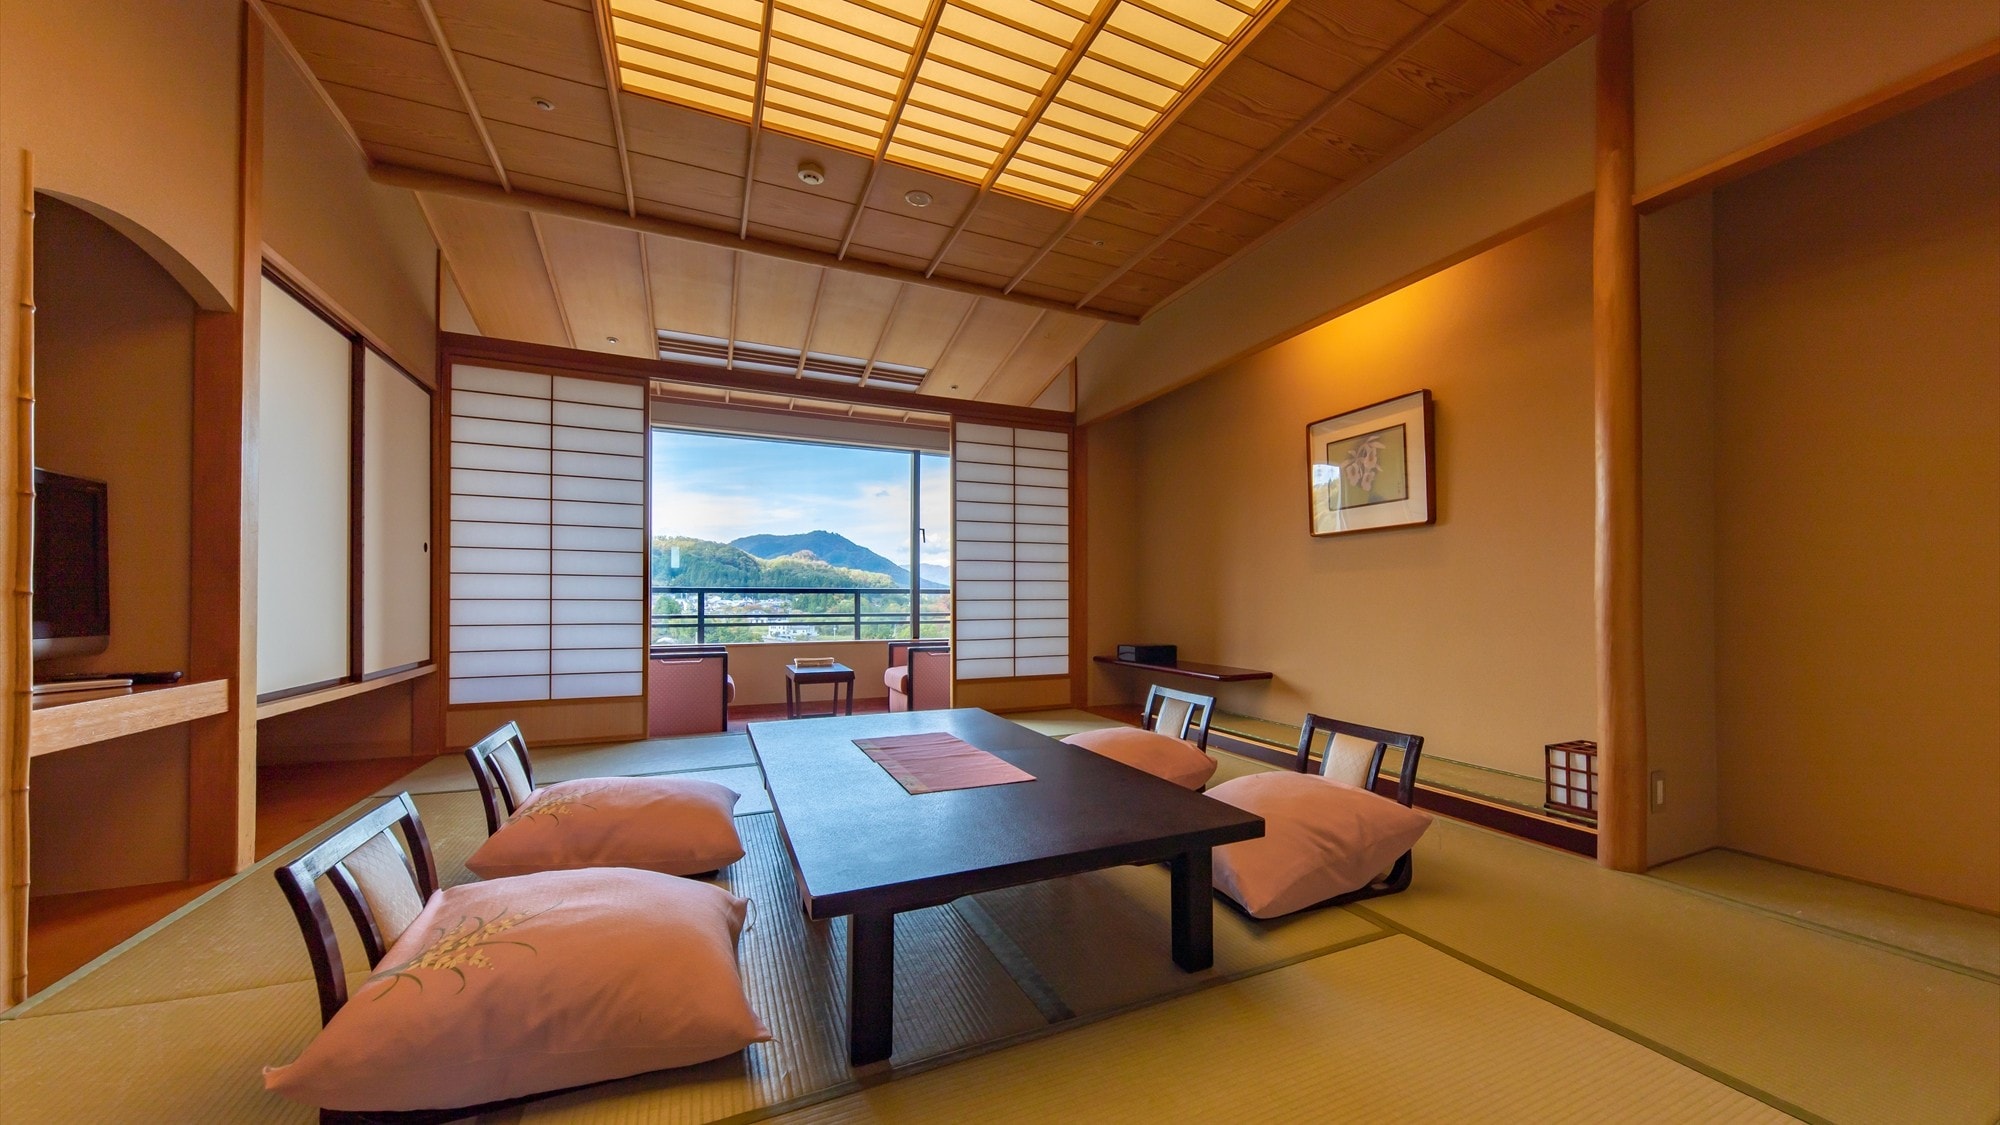 【일본식 방】 일본식 방은 전실에서 아름다운 사토야마의 풍경을 바라볼 수 있다(일례)